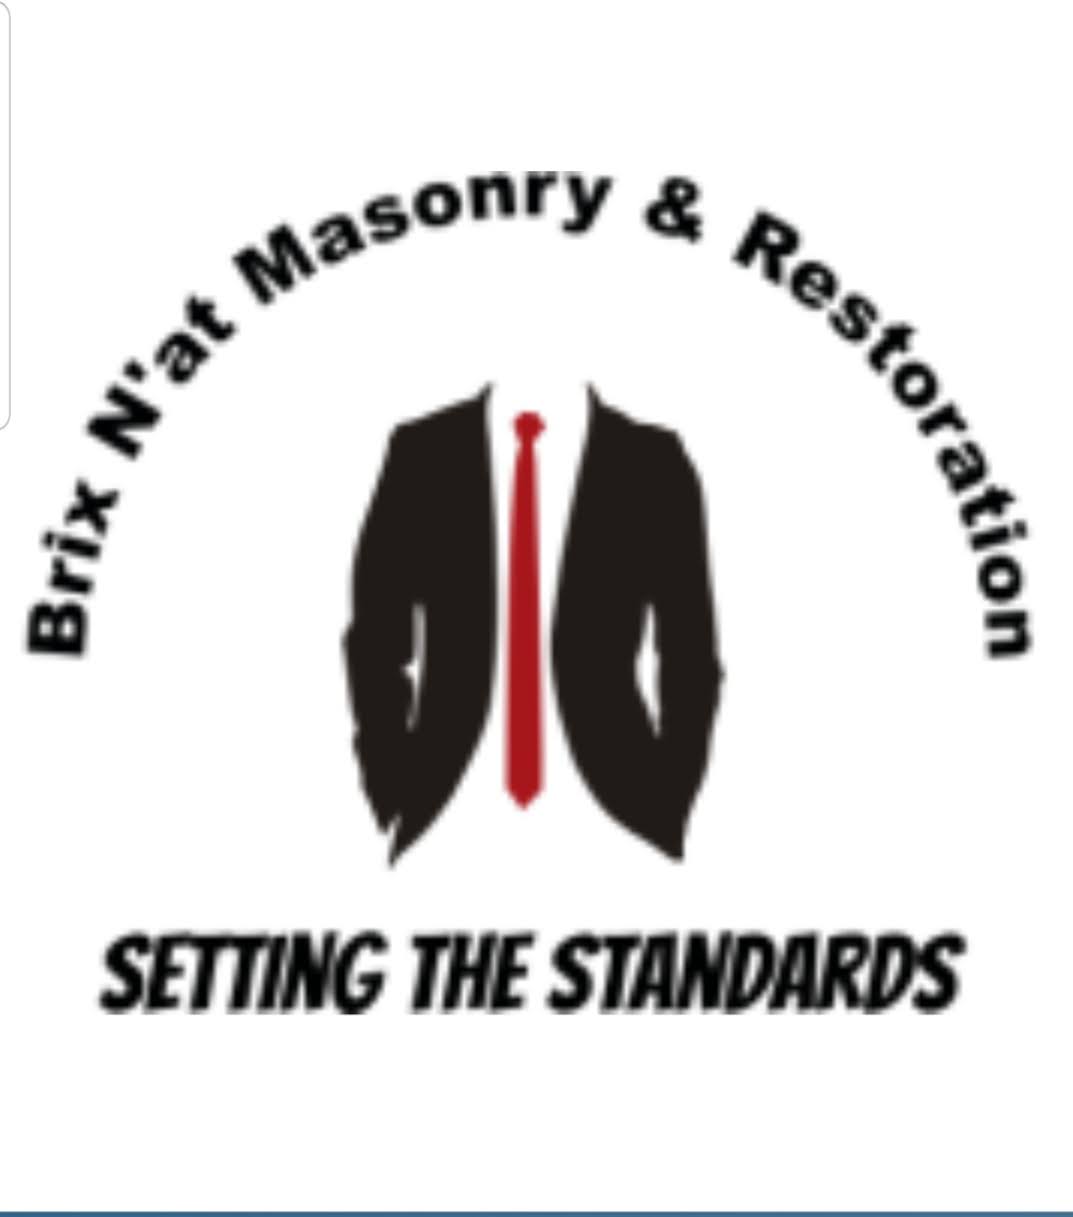 Brix N'at Masonry & Restoration Logo